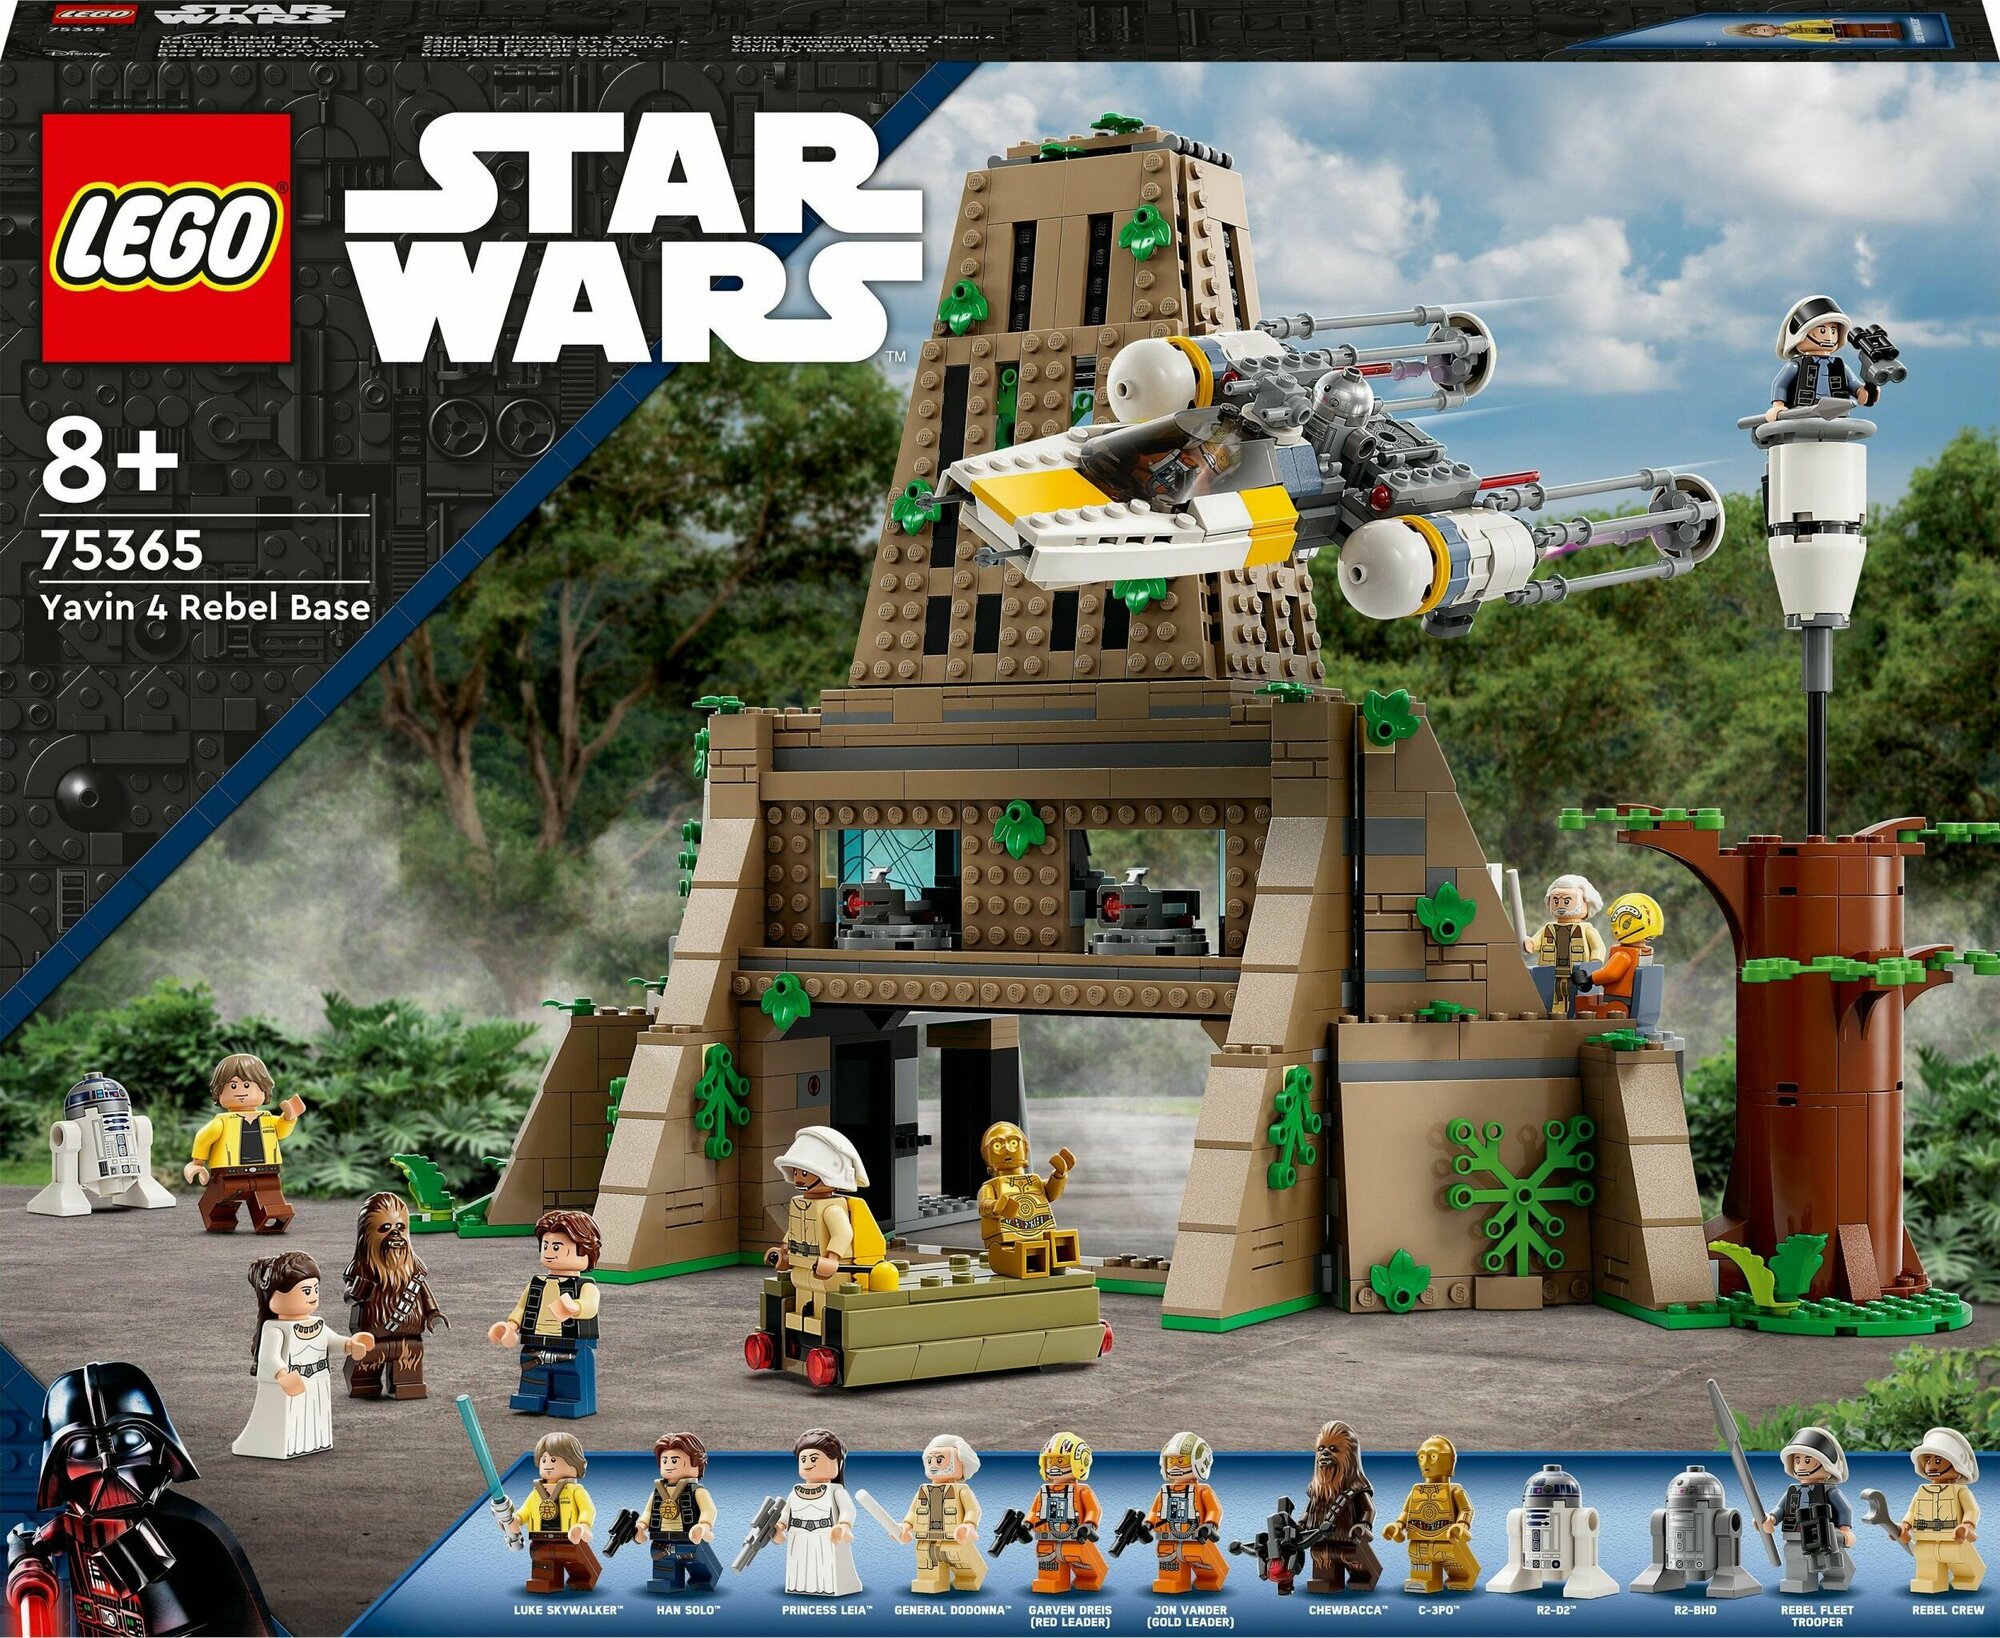 LEGO Star Wars База повстанцев на Явине 4 75365 - фото №9